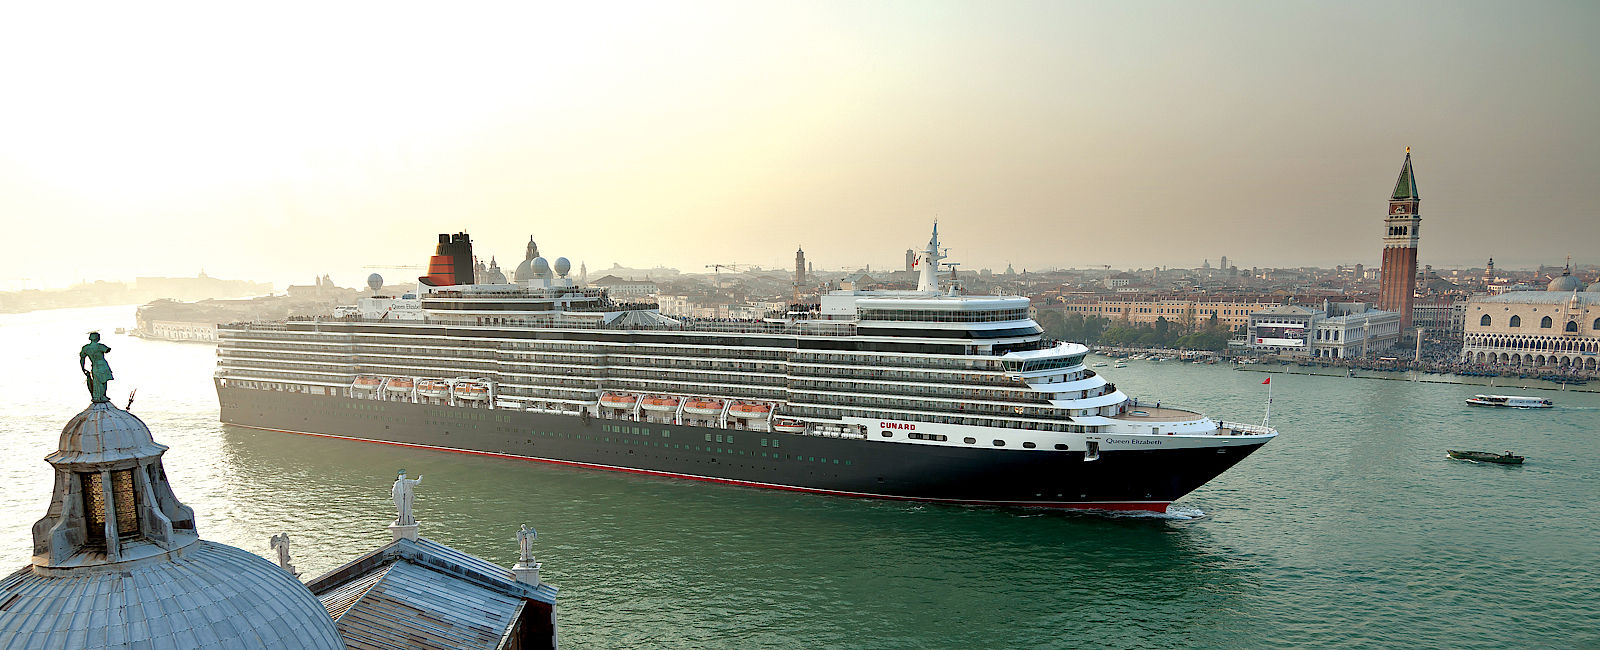 KREUZFAHRT NEWS
 Welcome back Cunard! 
